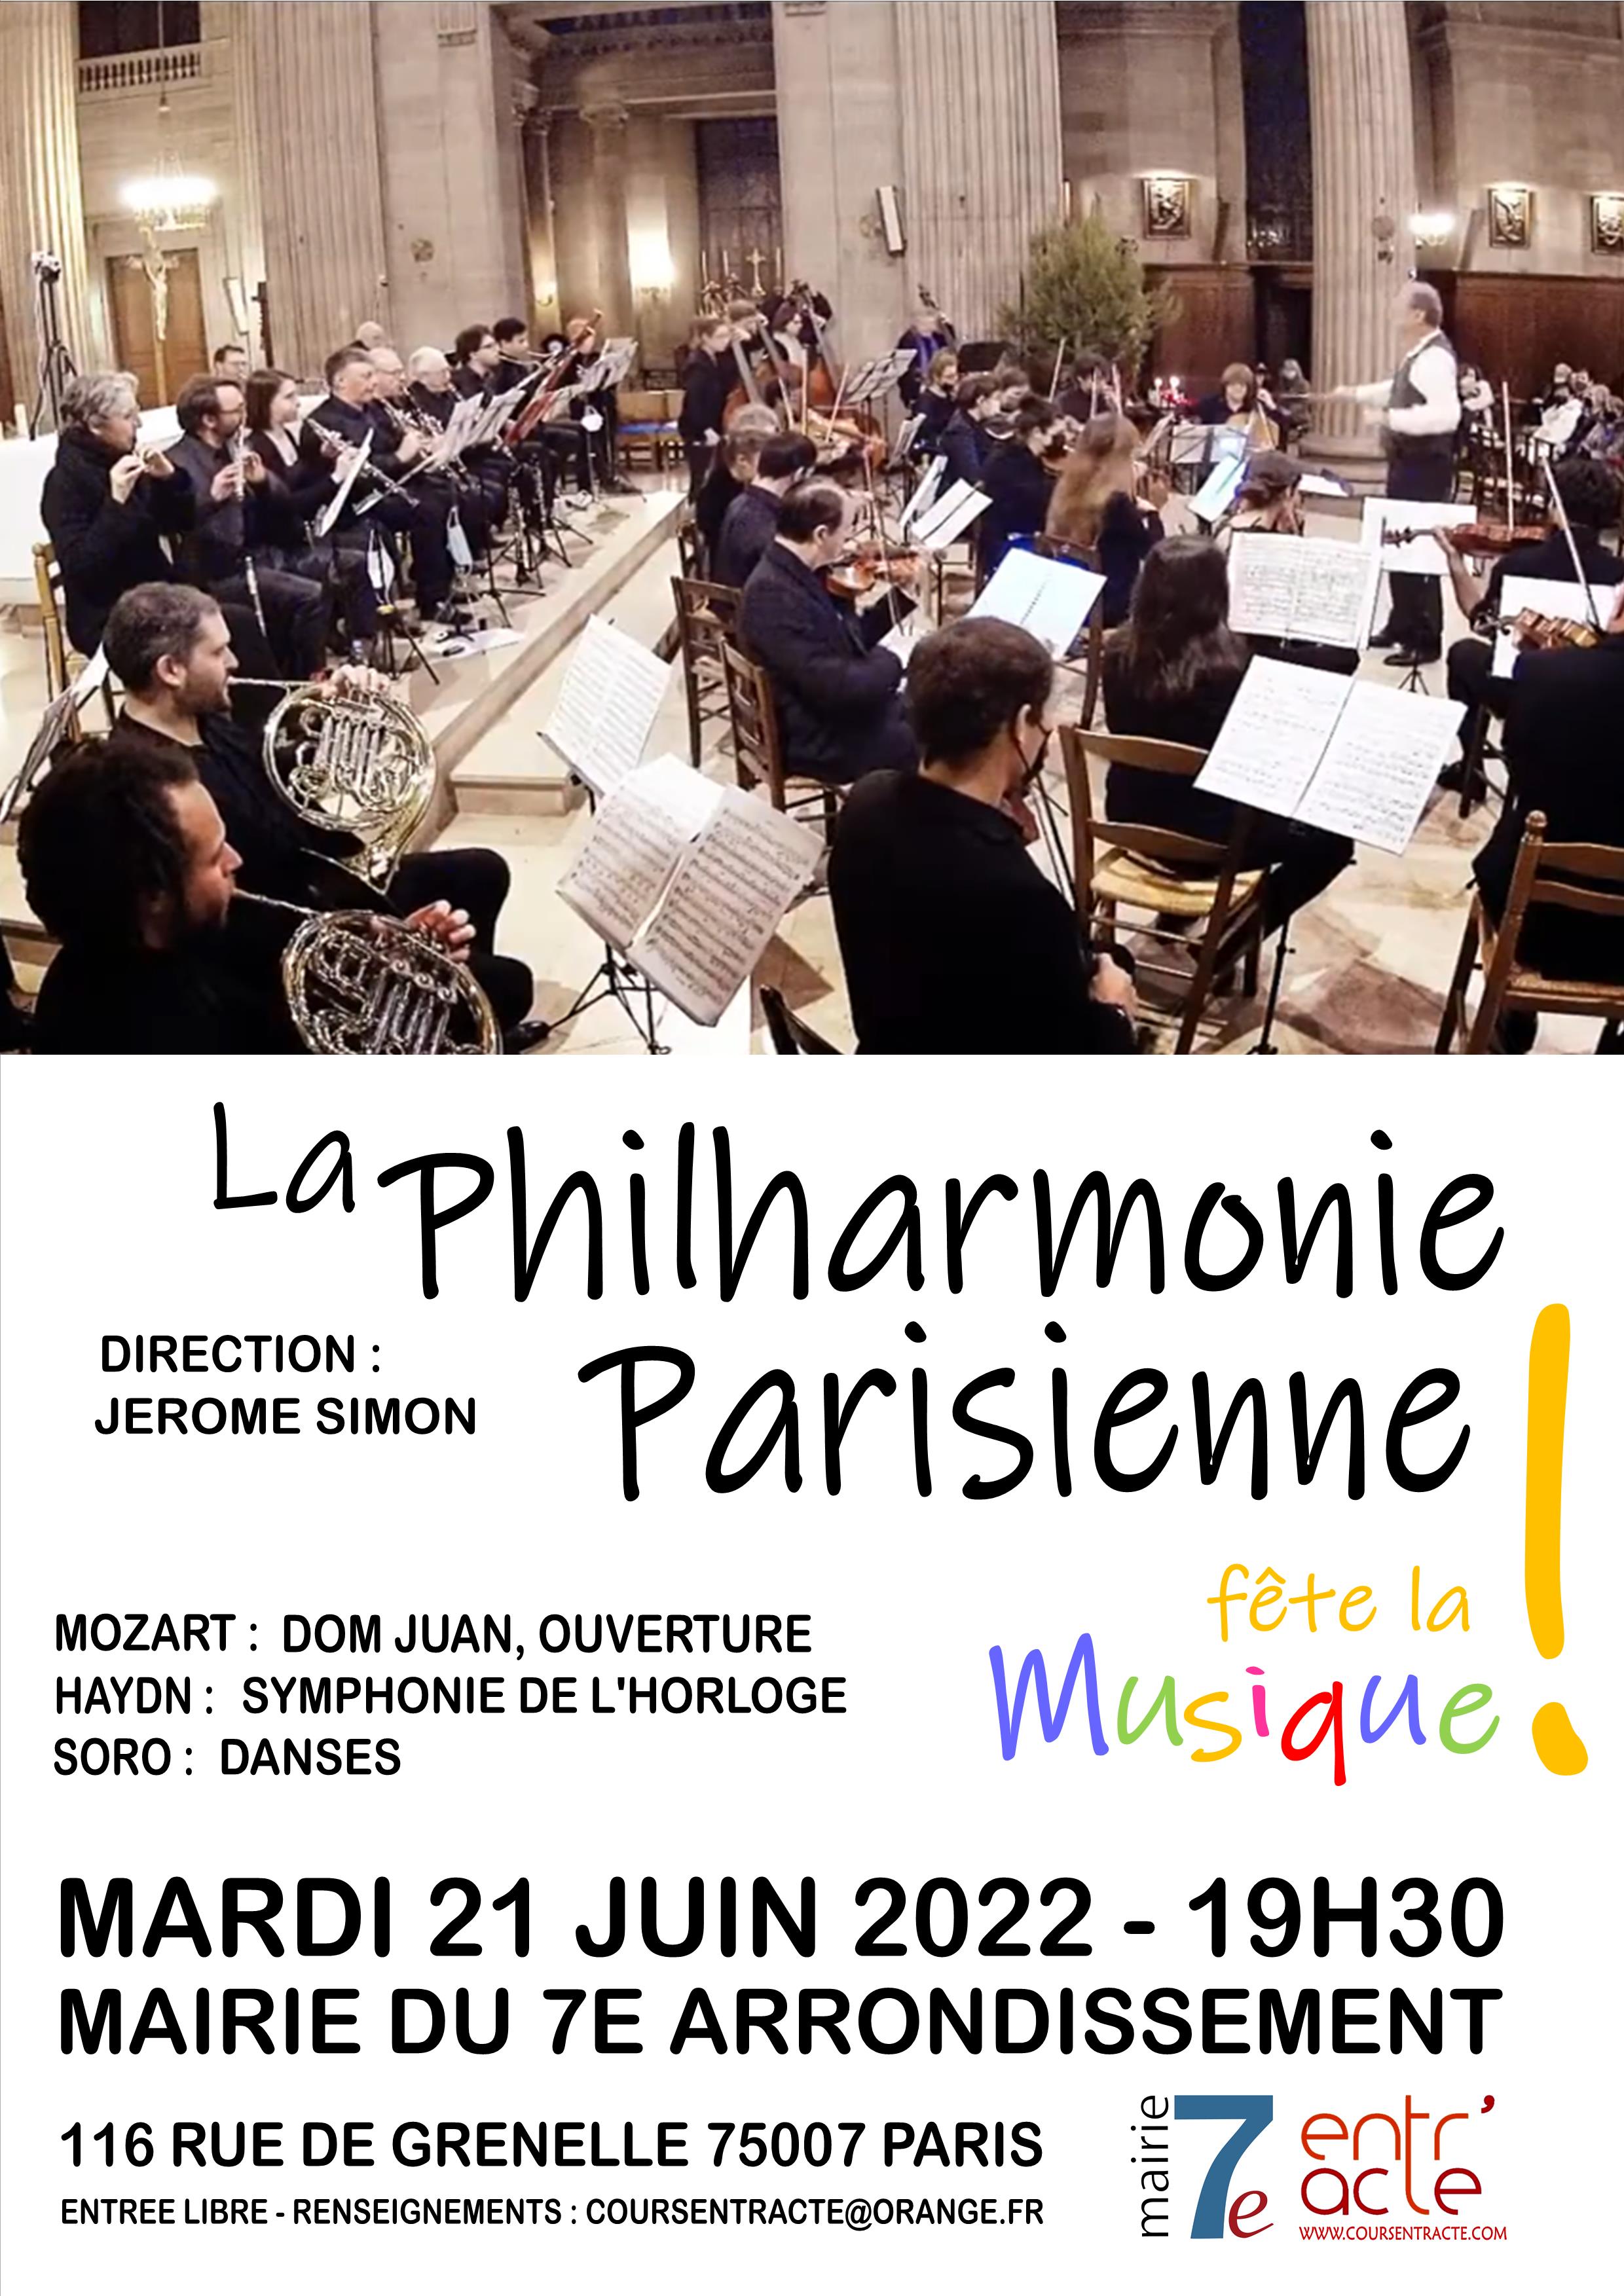 fete de la musique à la mairie du 7e le mardi 21 juin à 19h30 avec l'orchestre philarmonique la philarmonie parisienne